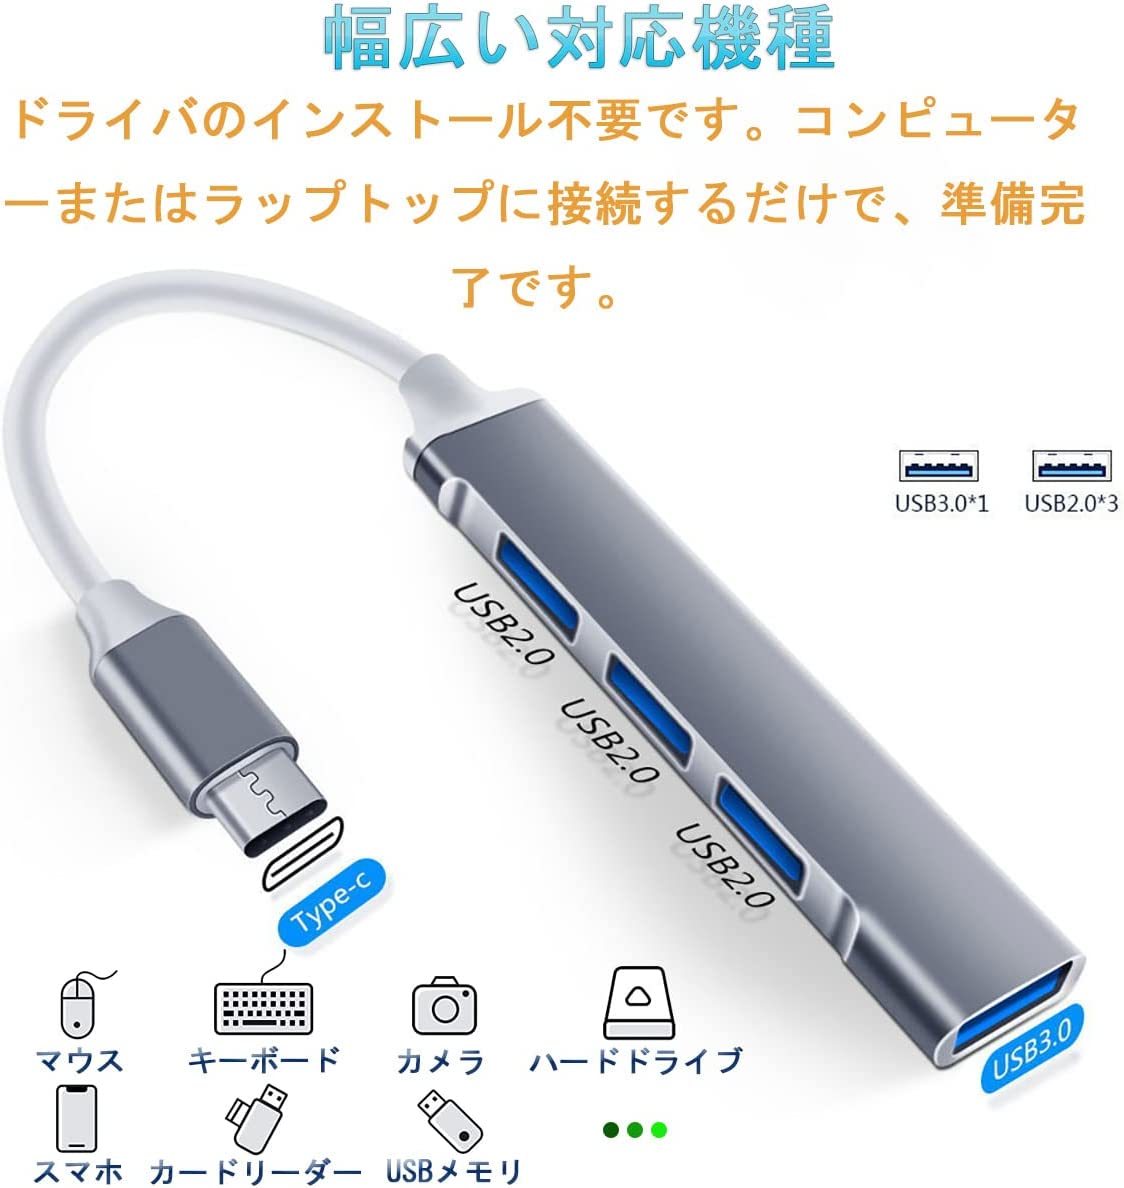 USBハブ USB3.0/2.0 ウルトラスリム 4ポートハブ USB Type-c ハブ USB C hub 軽量 コンパクト タイプC テレワーク リモート (グレー)_画像2